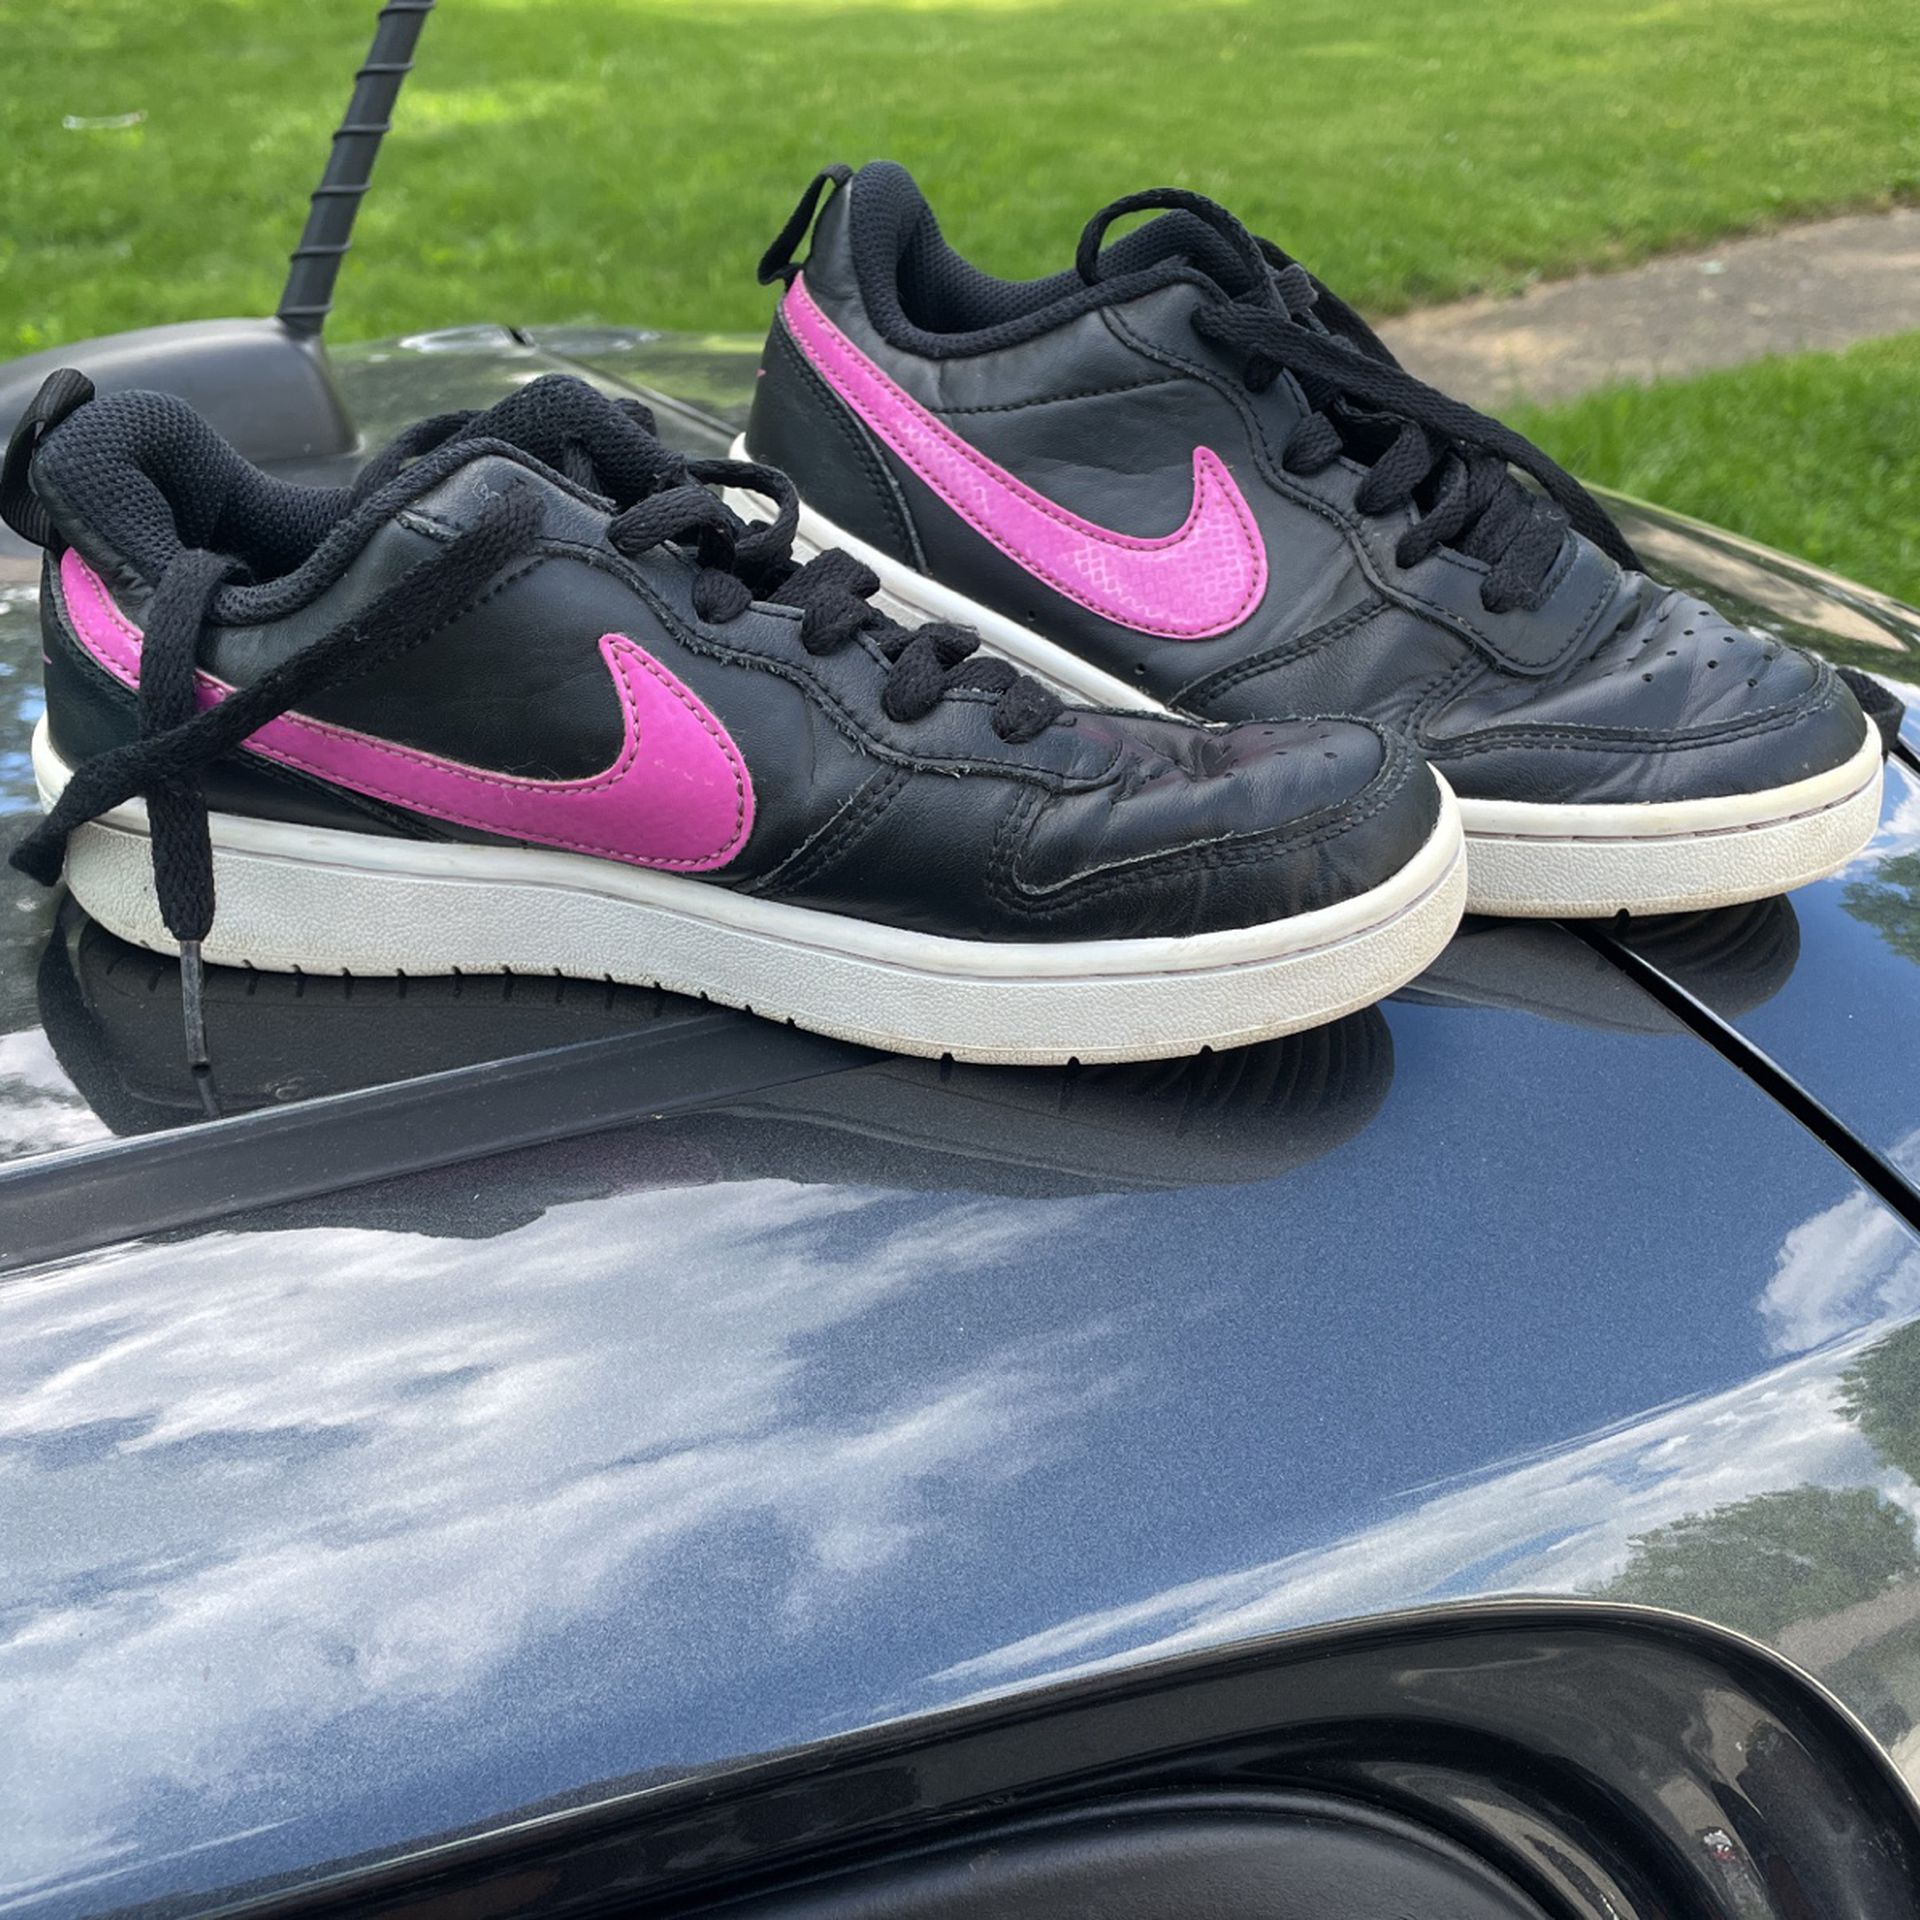 Girls Nike shoes